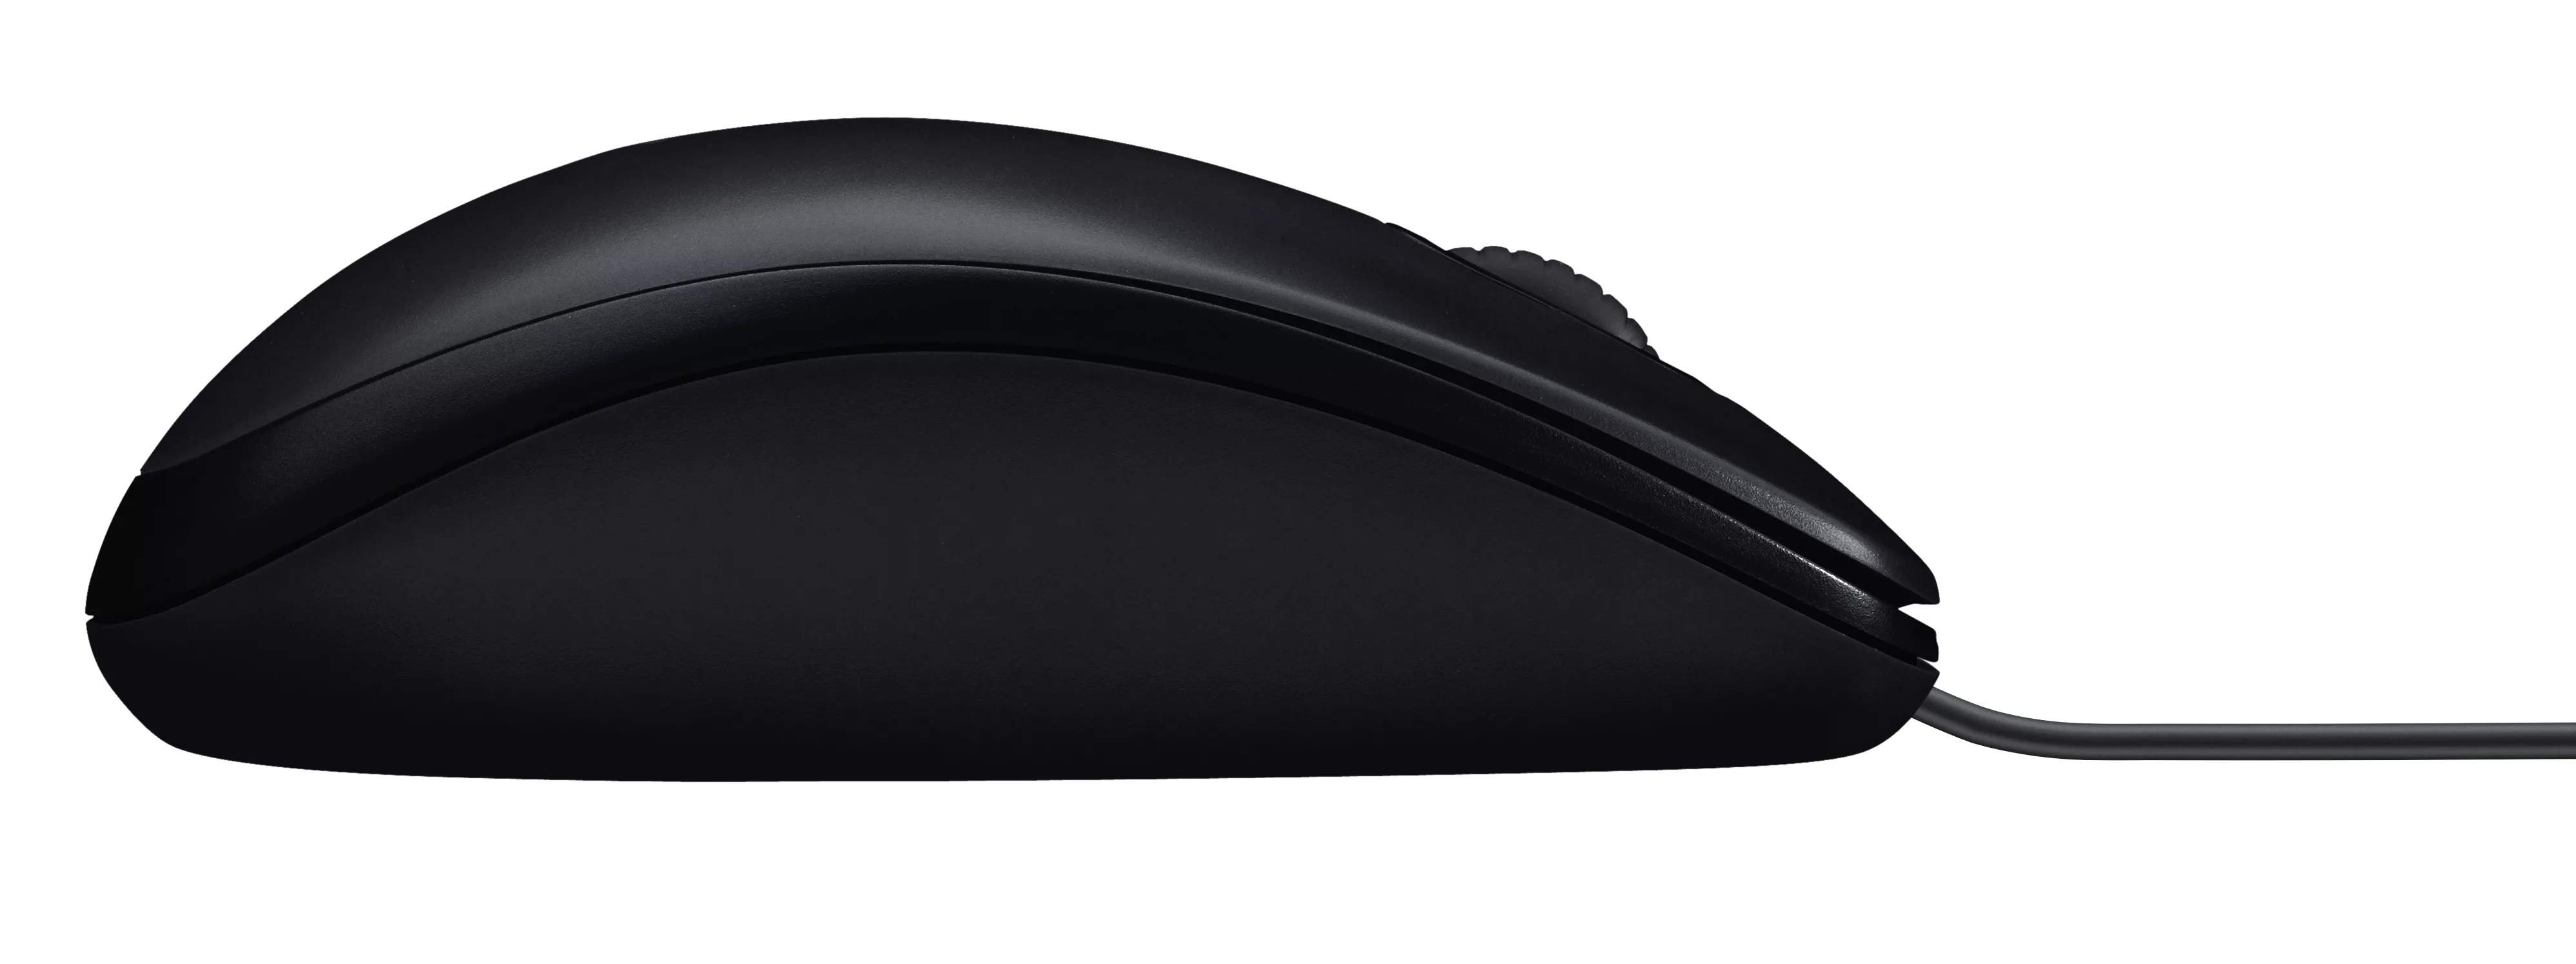 Vente LOGITECH M90 Mouse right and left-handed optical wired Logitech au meilleur prix - visuel 4